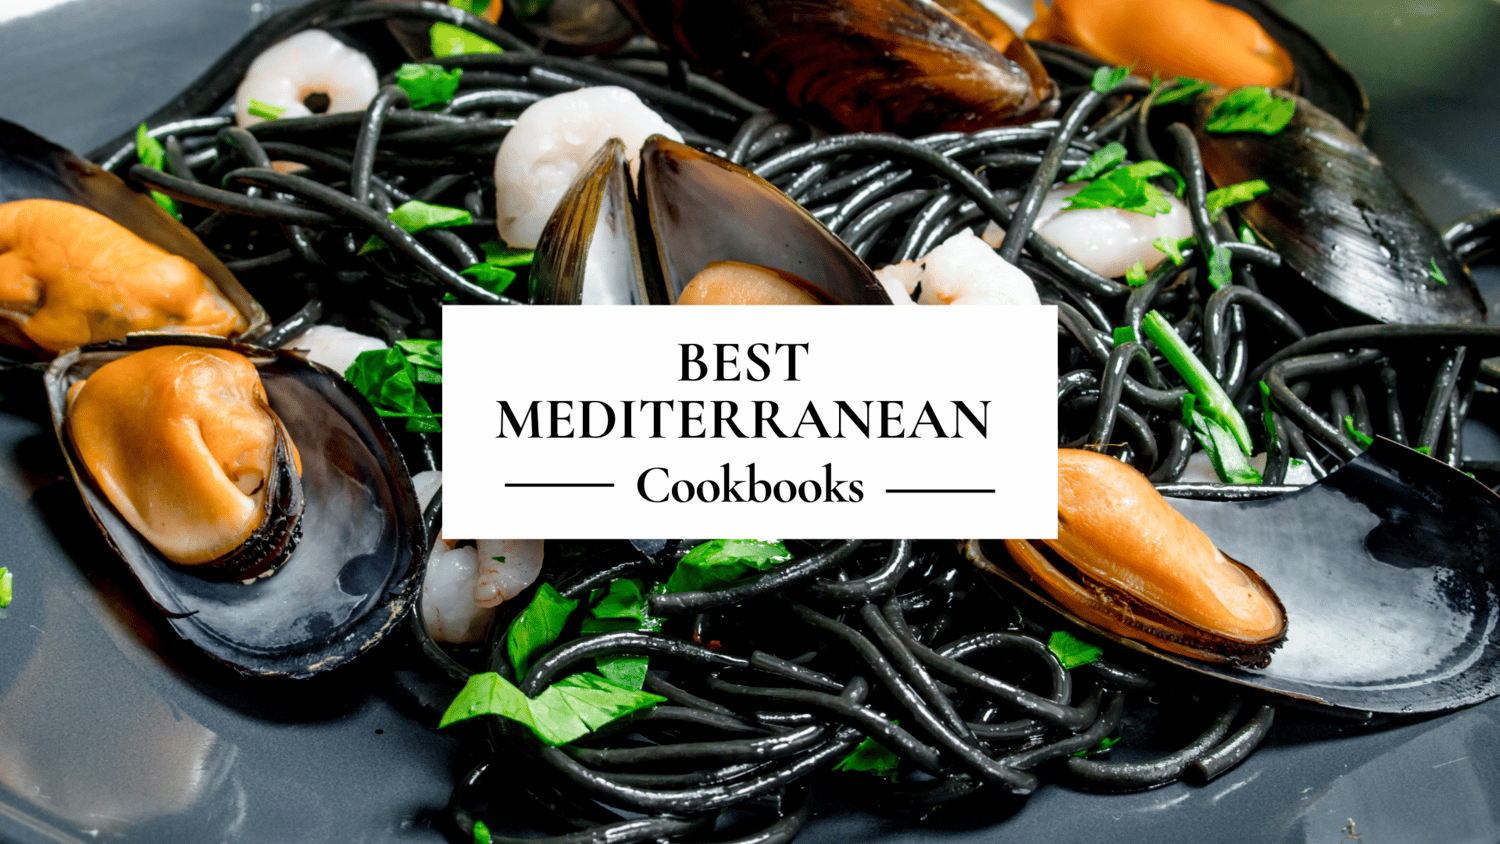 Best Mediterranean Cookbooks